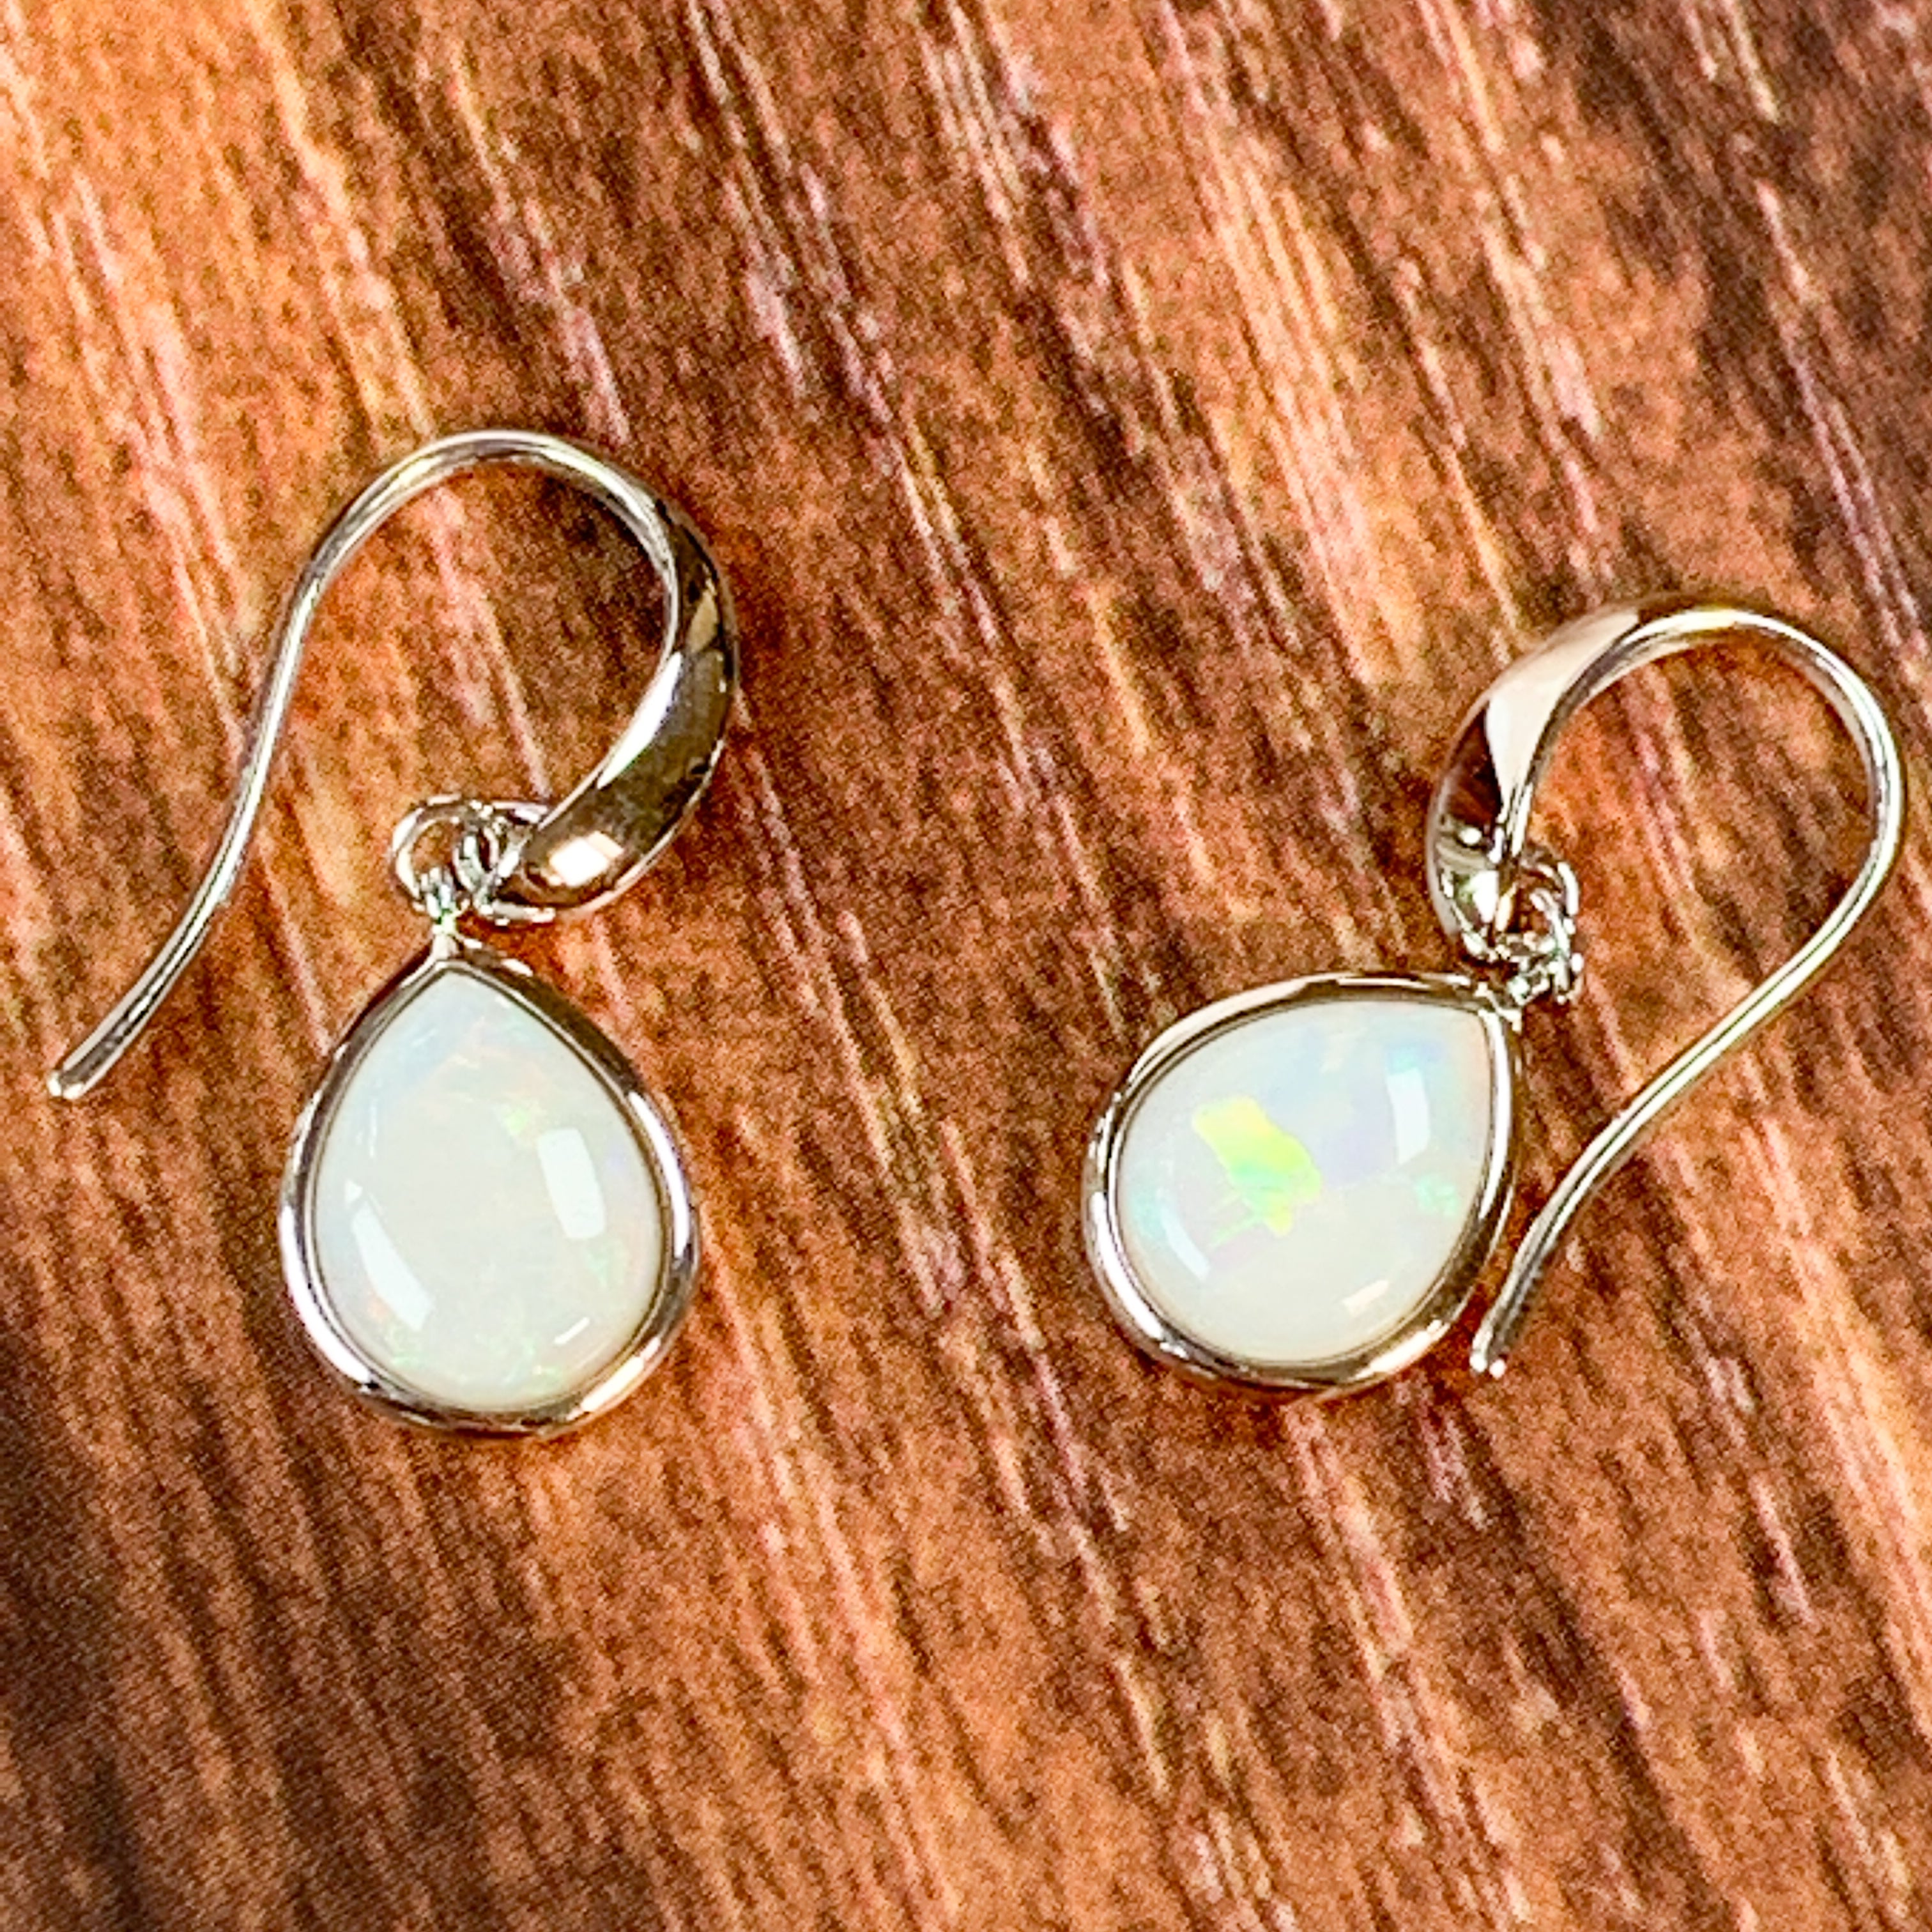 Sterling Silver Pear shape dangling White Opal earrings - Masterpiece Jewellery Opal & Gems Sydney Australia | Online Shop